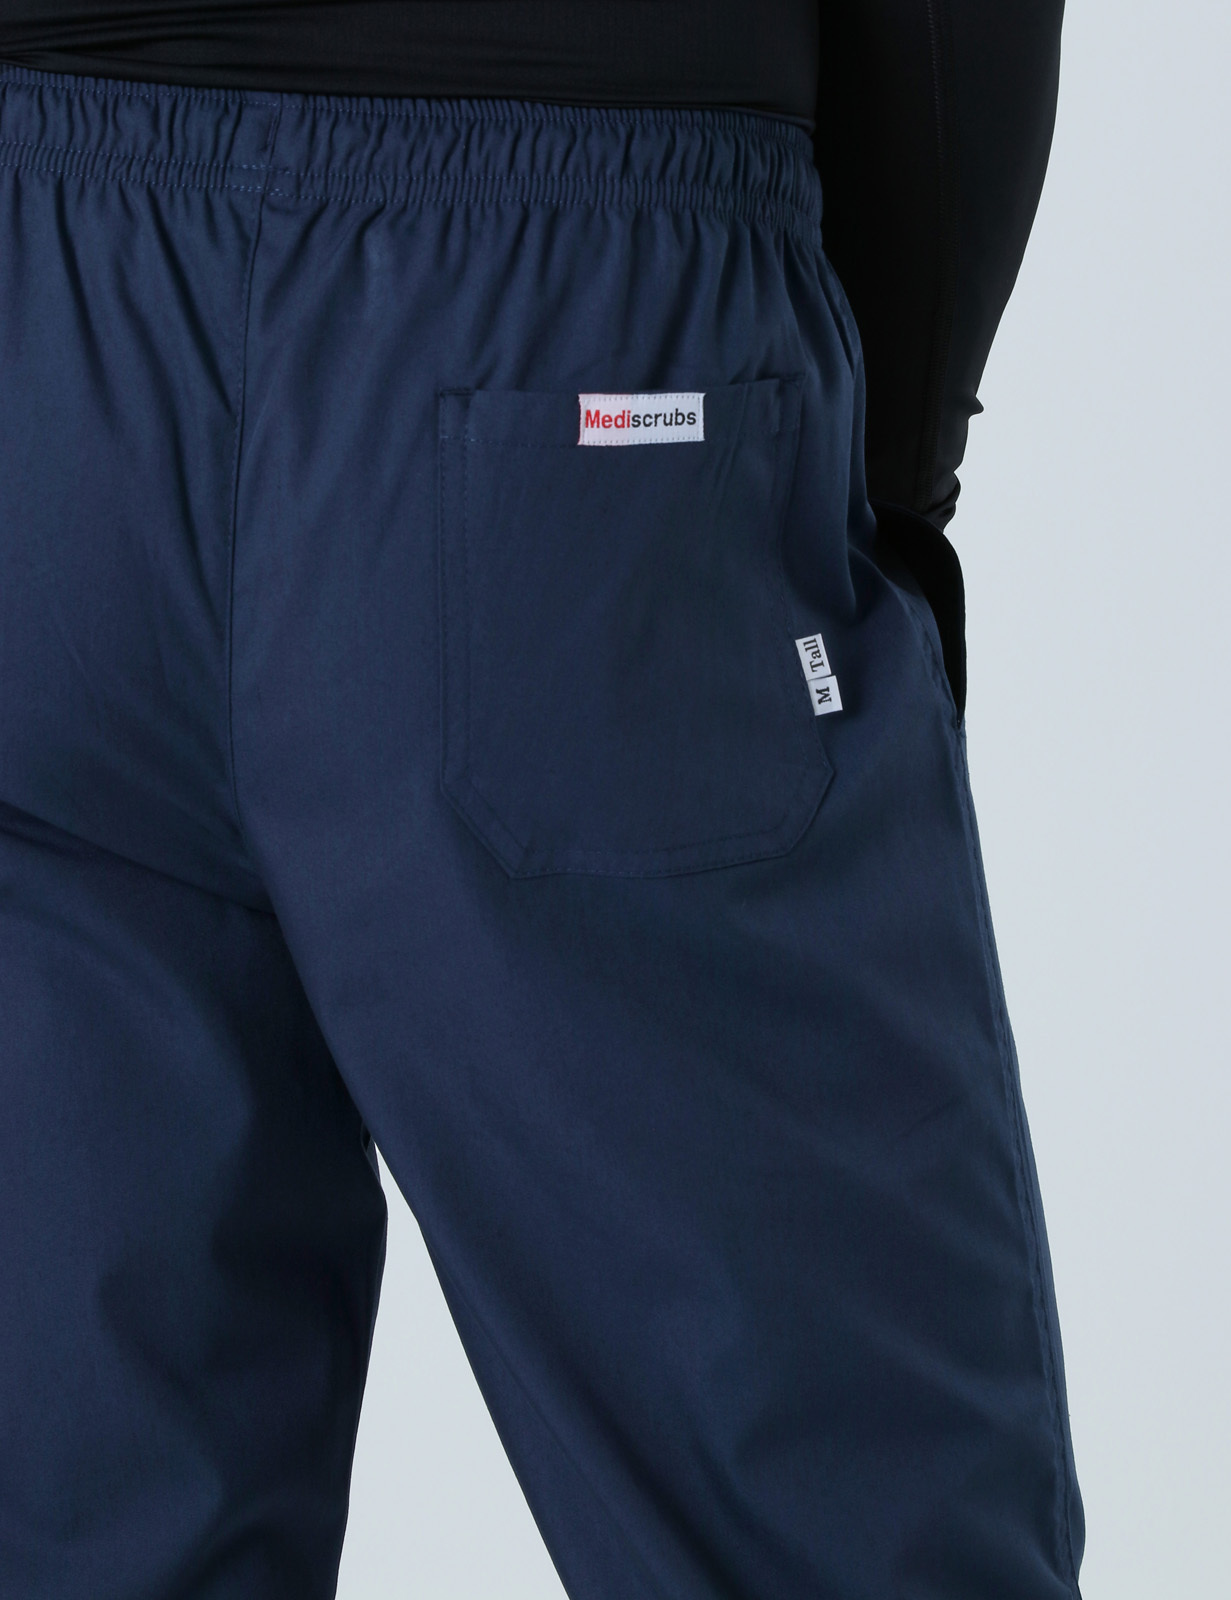 Men's Regular Cut Pants - Navy - Large - Tall - 1